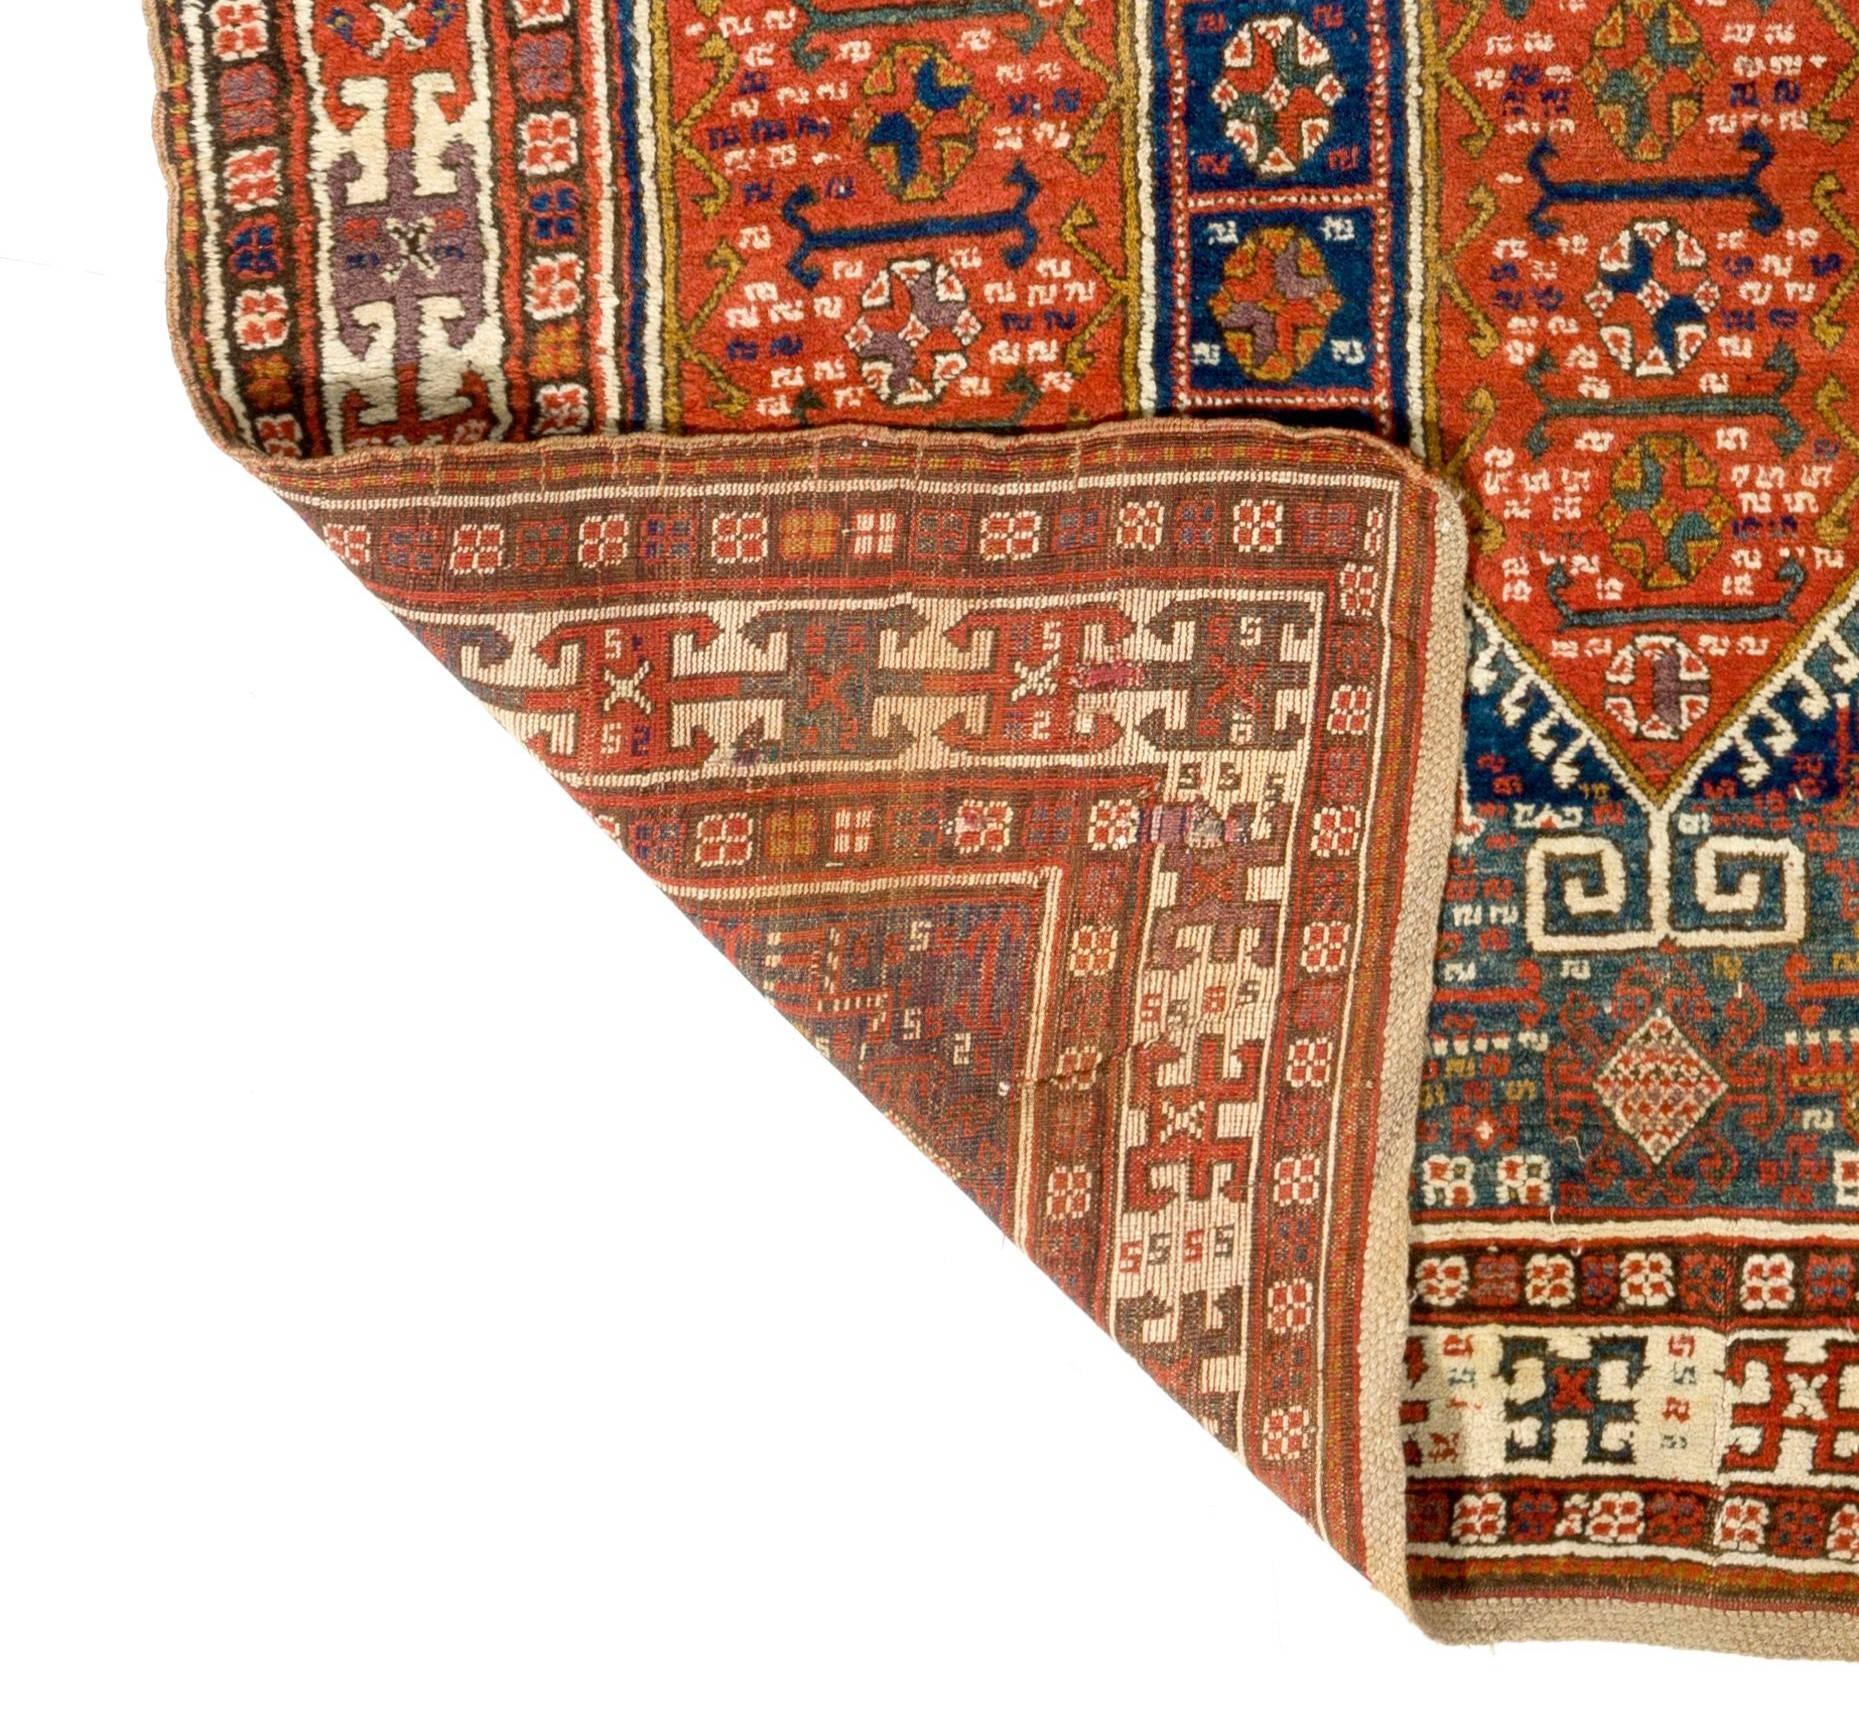 19th Century Antique Caucasian Karabakh Runner Rug, Tribal Carpet, Full Pile. 4.2 x 9.3 ft